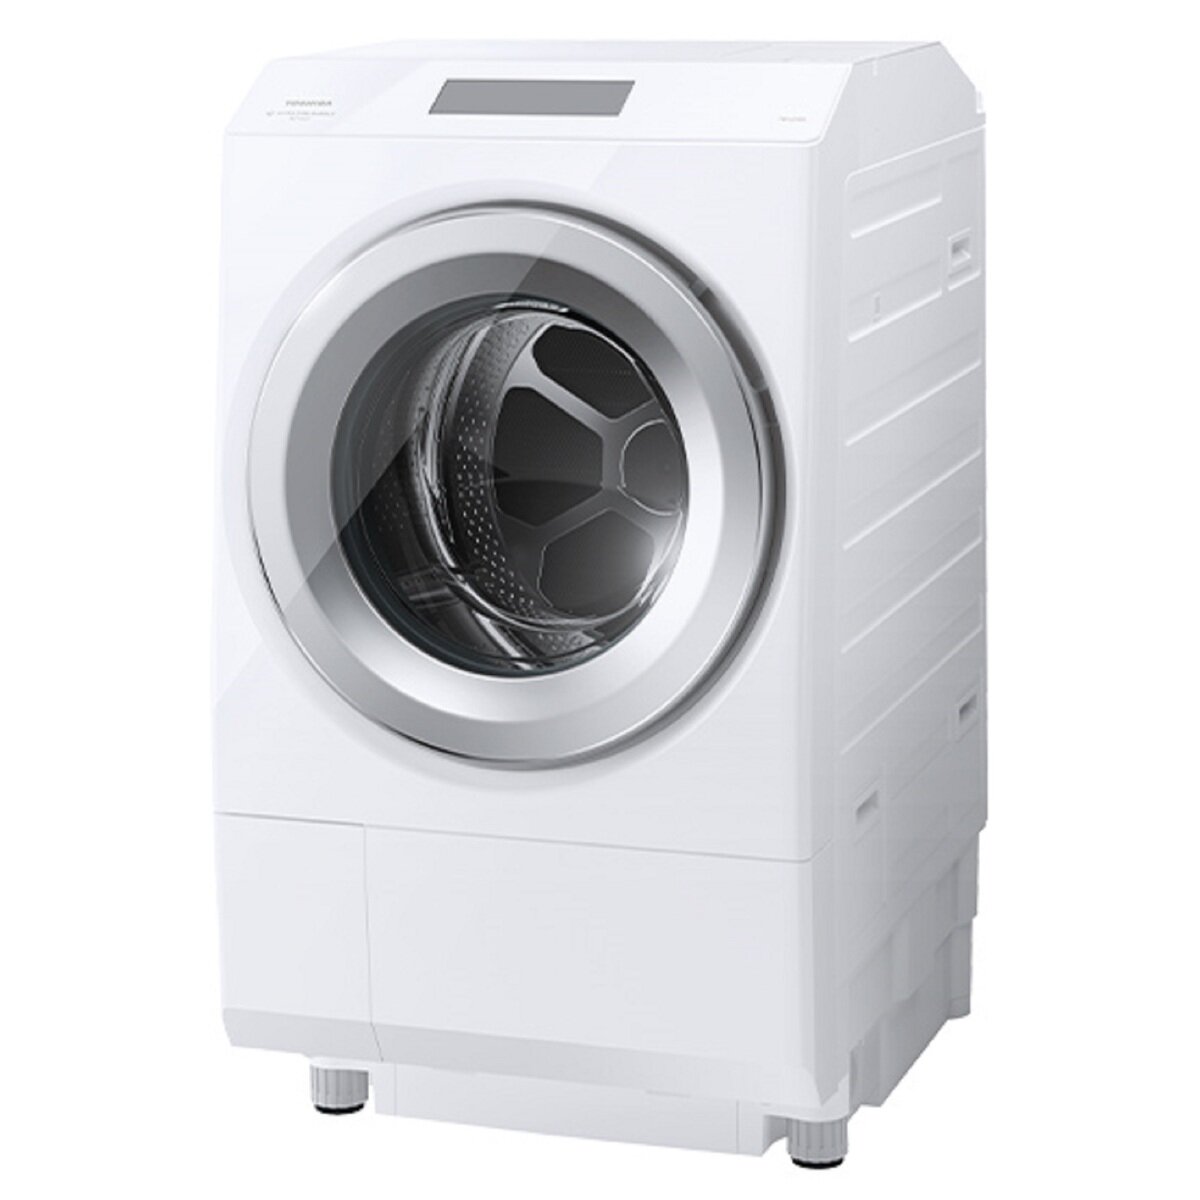 東芝 ドラム式洗濯乾燥機 ZABOON 洗濯12kg 乾燥 7kg  グランホワイト  左開き   TW-127XP3L  (W)